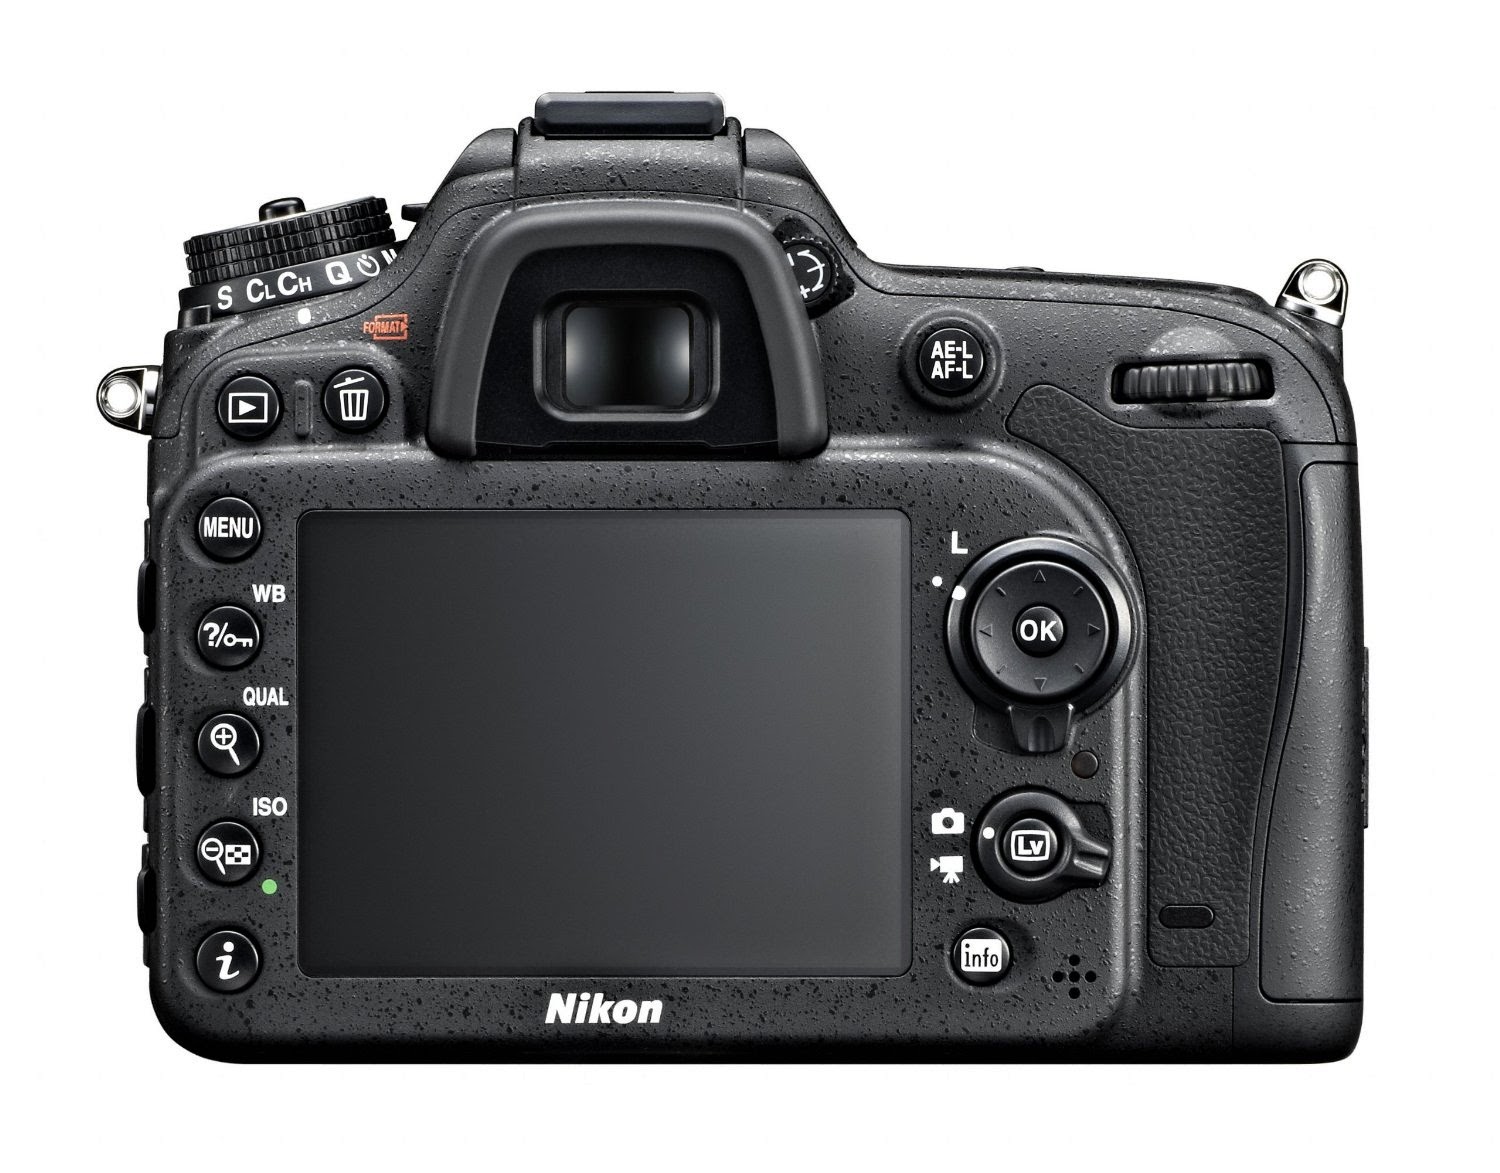 Nikon D7100 DSLR camera, rear view